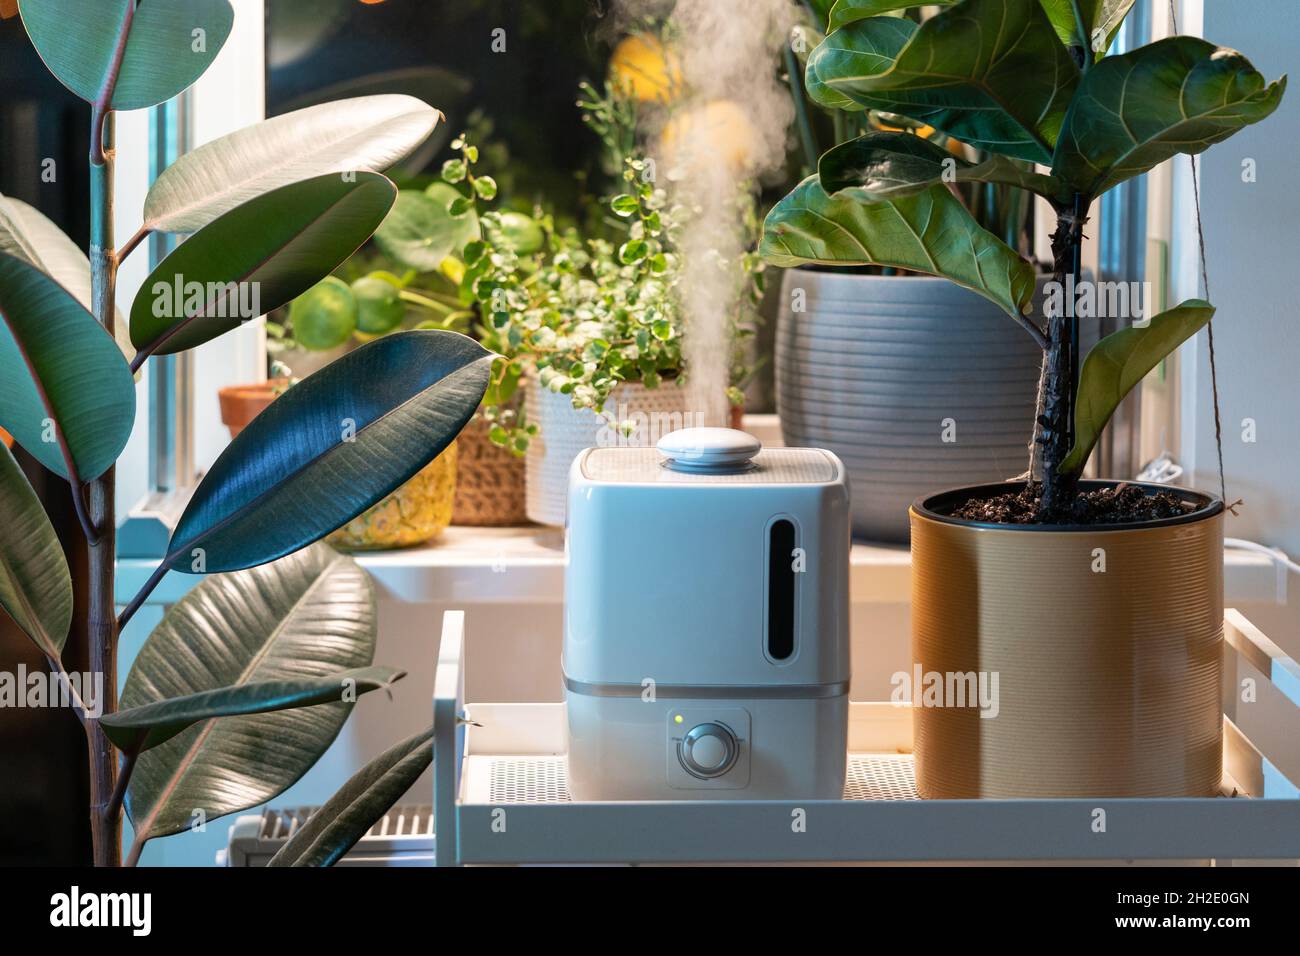 Dampf vom Luftbefeuchter, befeuchtet trockene Luft, umgeben von  Zimmerpflanzen. Hausgarten, Pflanzenpflege Stockfotografie - Alamy